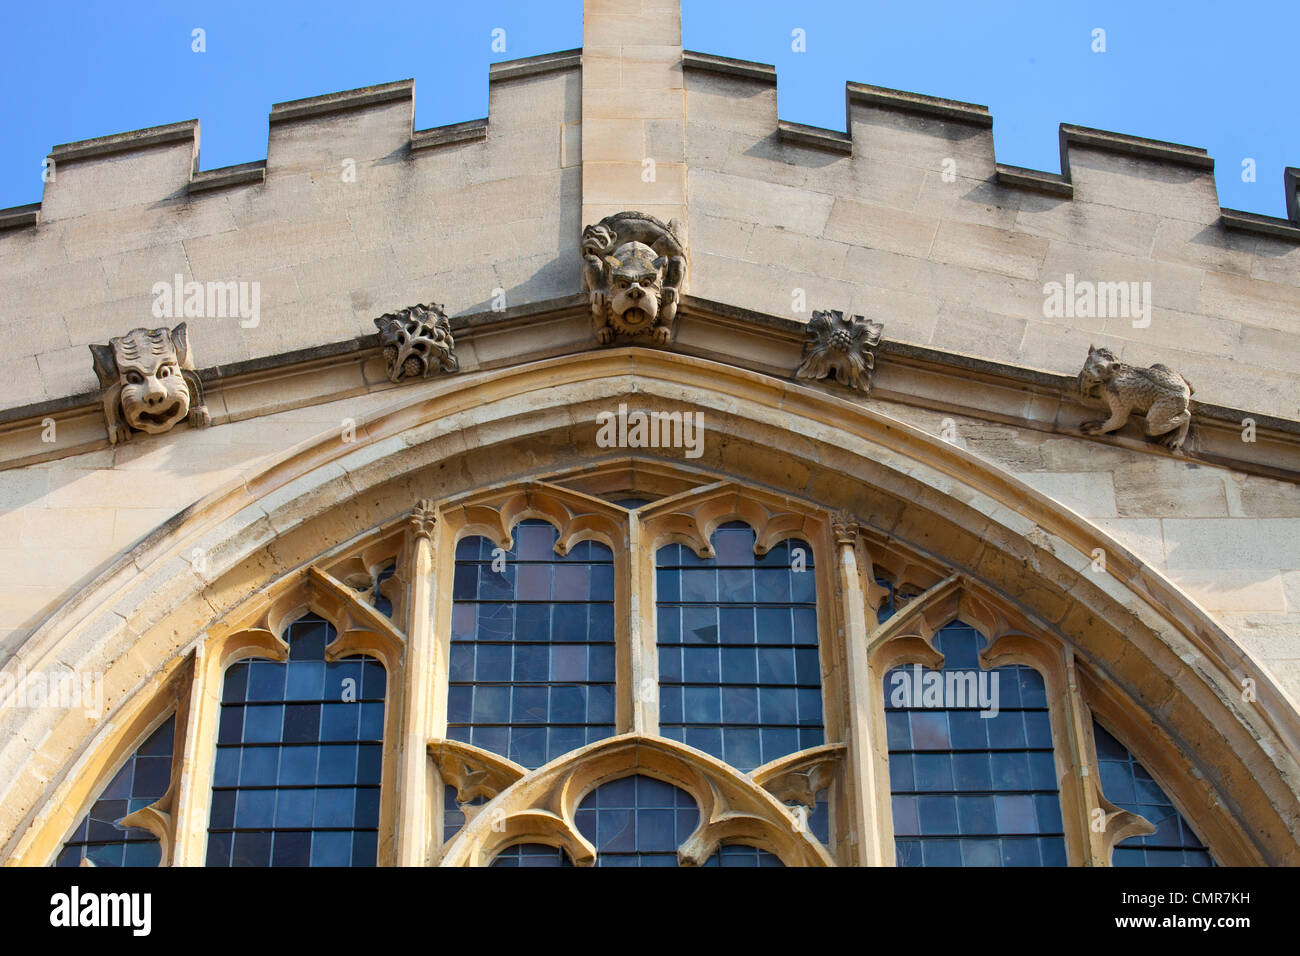 Kapelle des Magdalen College in Oxford - Fassade mit Wasserspeier Stockfoto